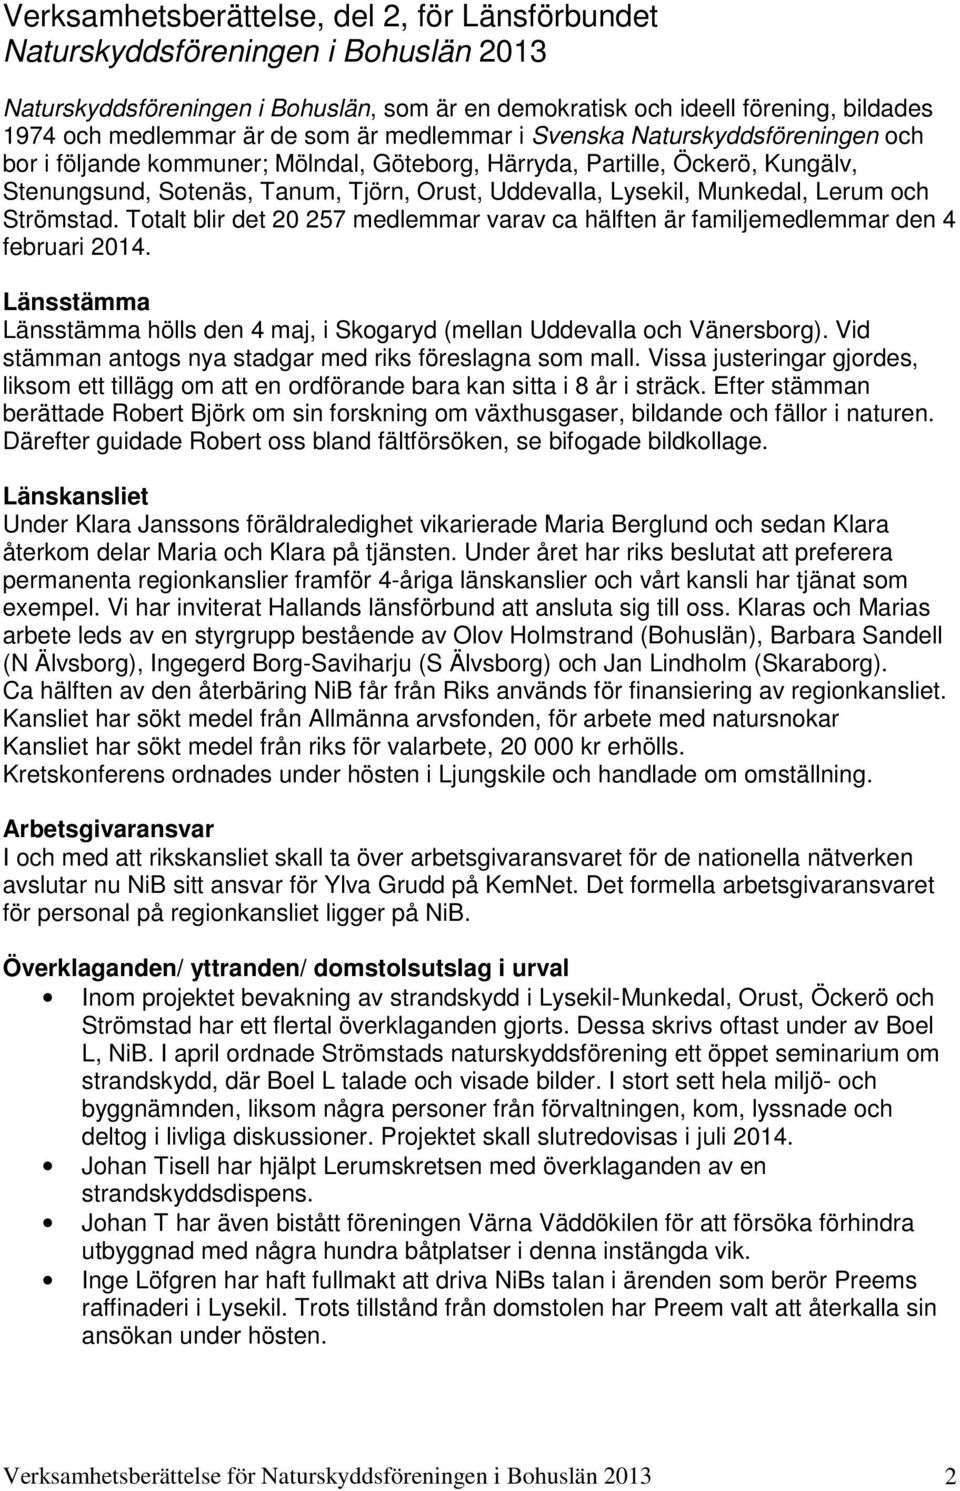 Munkedal, Lerum och Strömstad. Totalt blir det 20 257 medlemmar varav ca hälften är familjemedlemmar den 4 februari 2014.